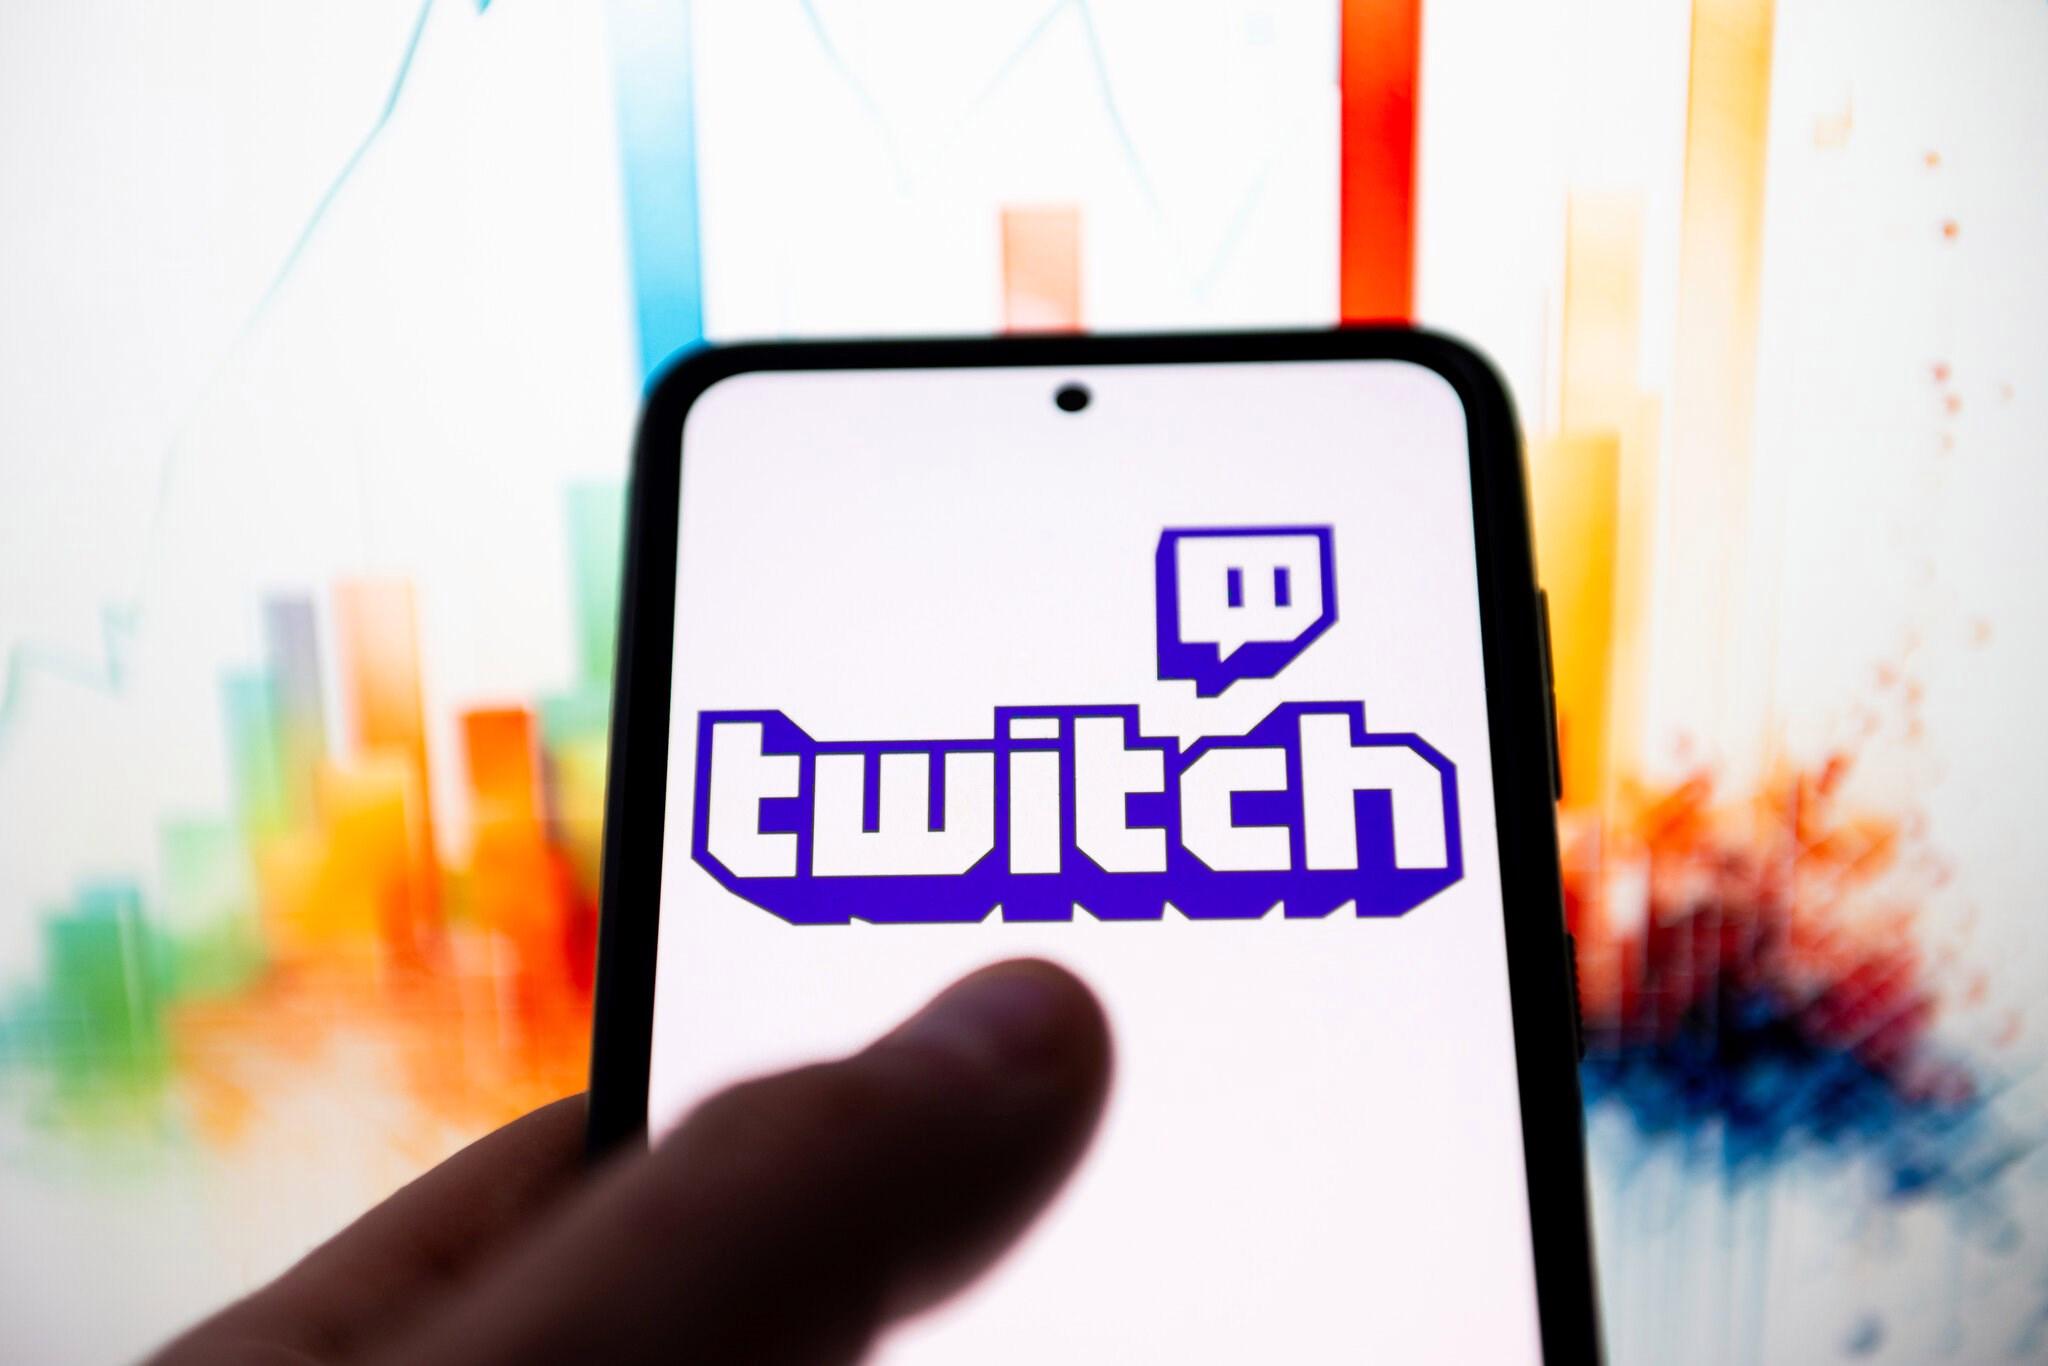 Twitch, Güney Kore’deki faaliyetlerini noktaladı